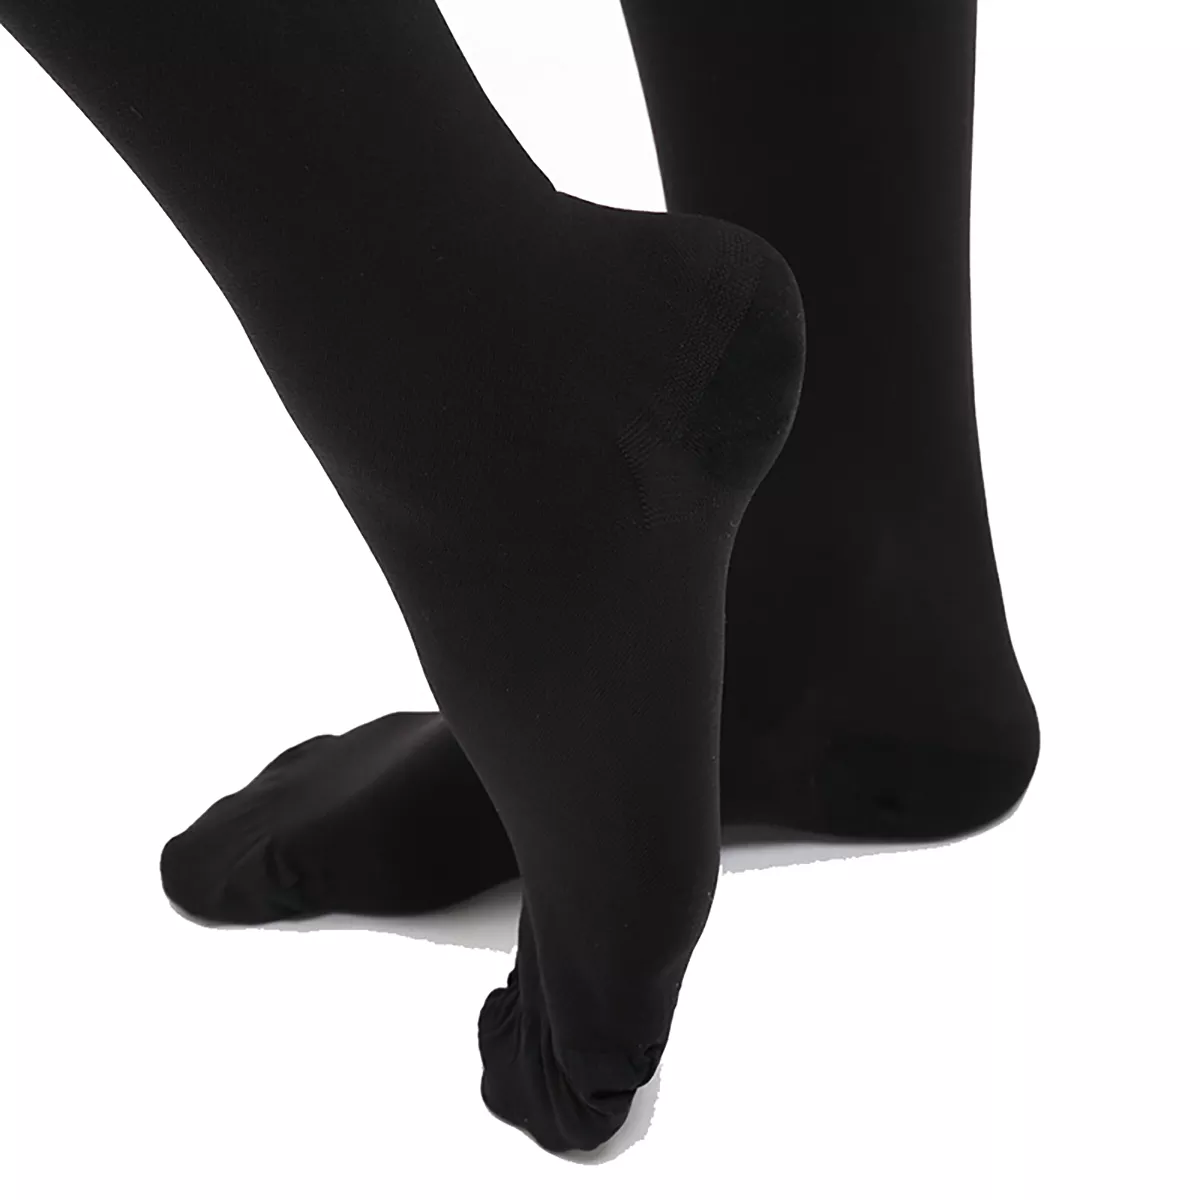 20-30 mmHg Men Knee High Open Toe Compression Socks – Varcoh ® Compression  Socks